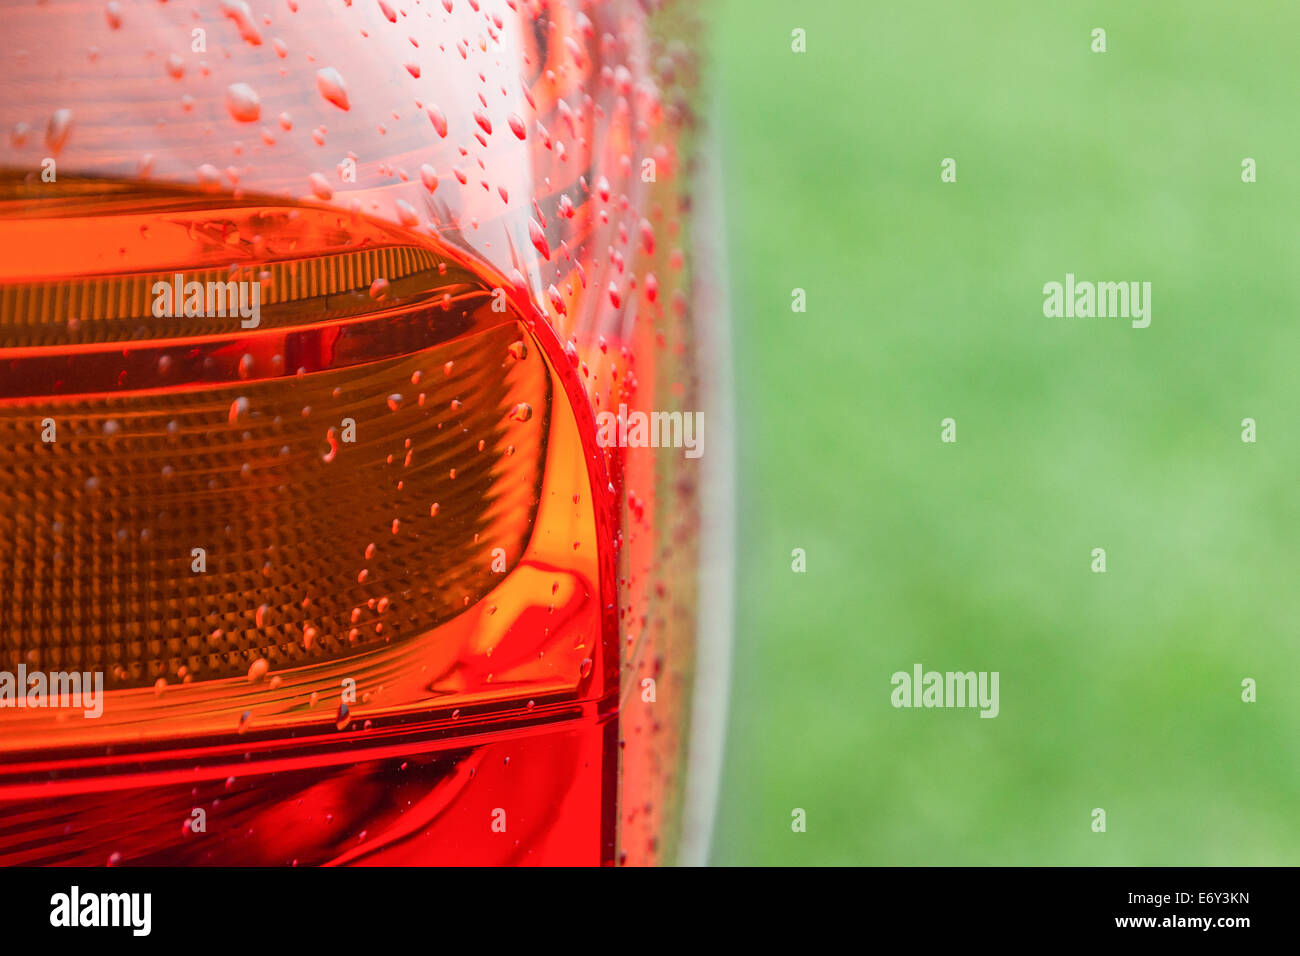 Después de la lluvia, mojado con gotas de agua, luces traseras de nuevo coche moderno sobre la hierba verde fresca Foto de stock